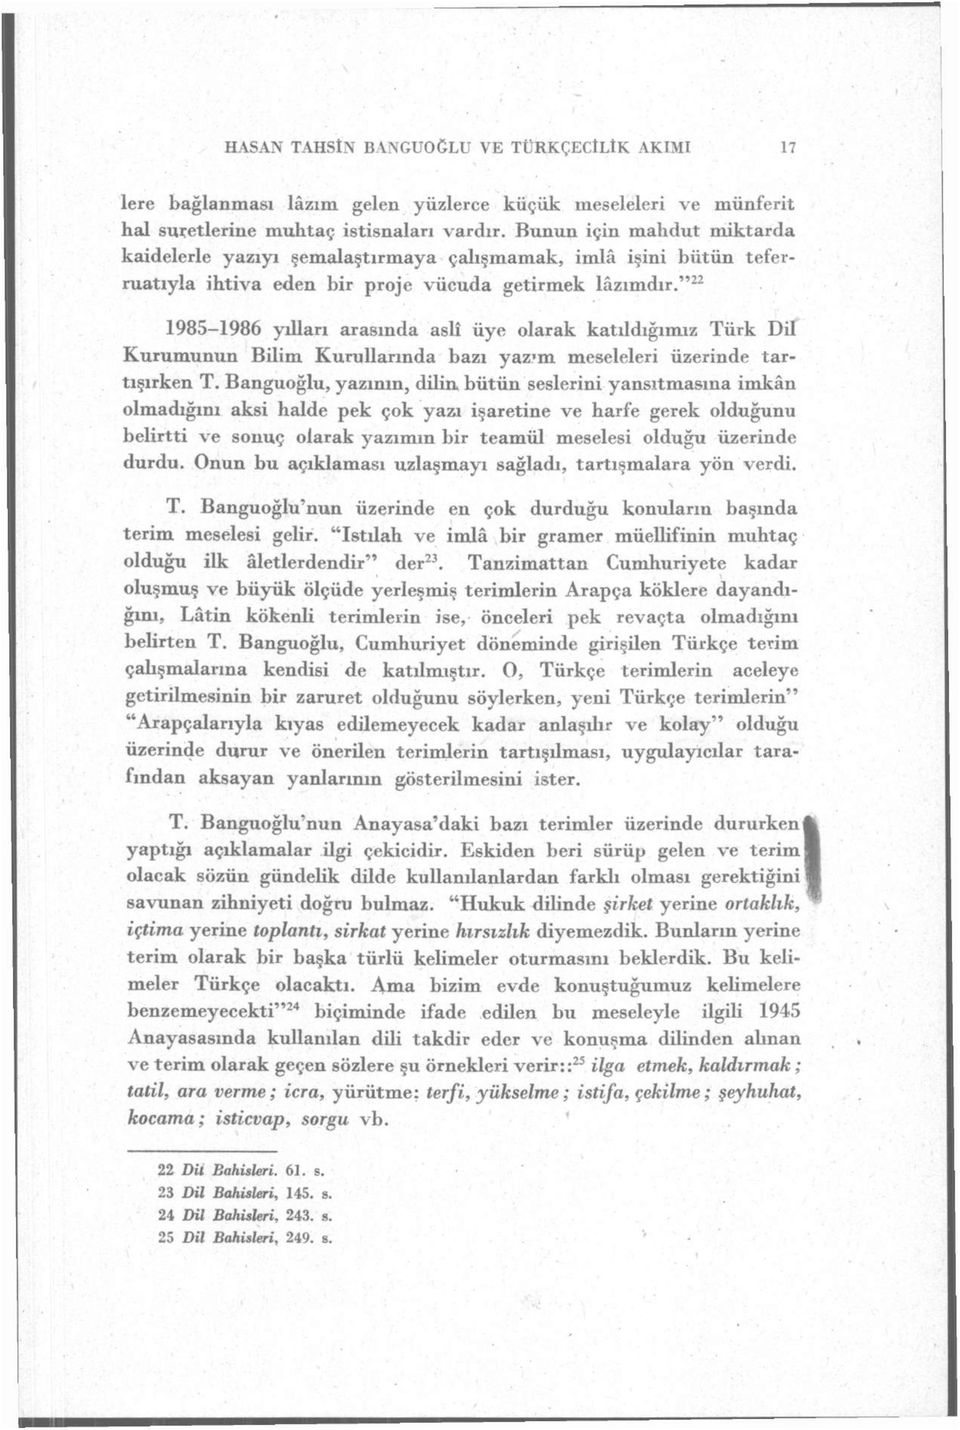 " 22 1985-1986 ydlan arasında aslî üye olarak katıldığımız Türk Dil Kurumunun Bilim Kurullarında bazı yaz-m meseleleri üzerinde tartışırken T.